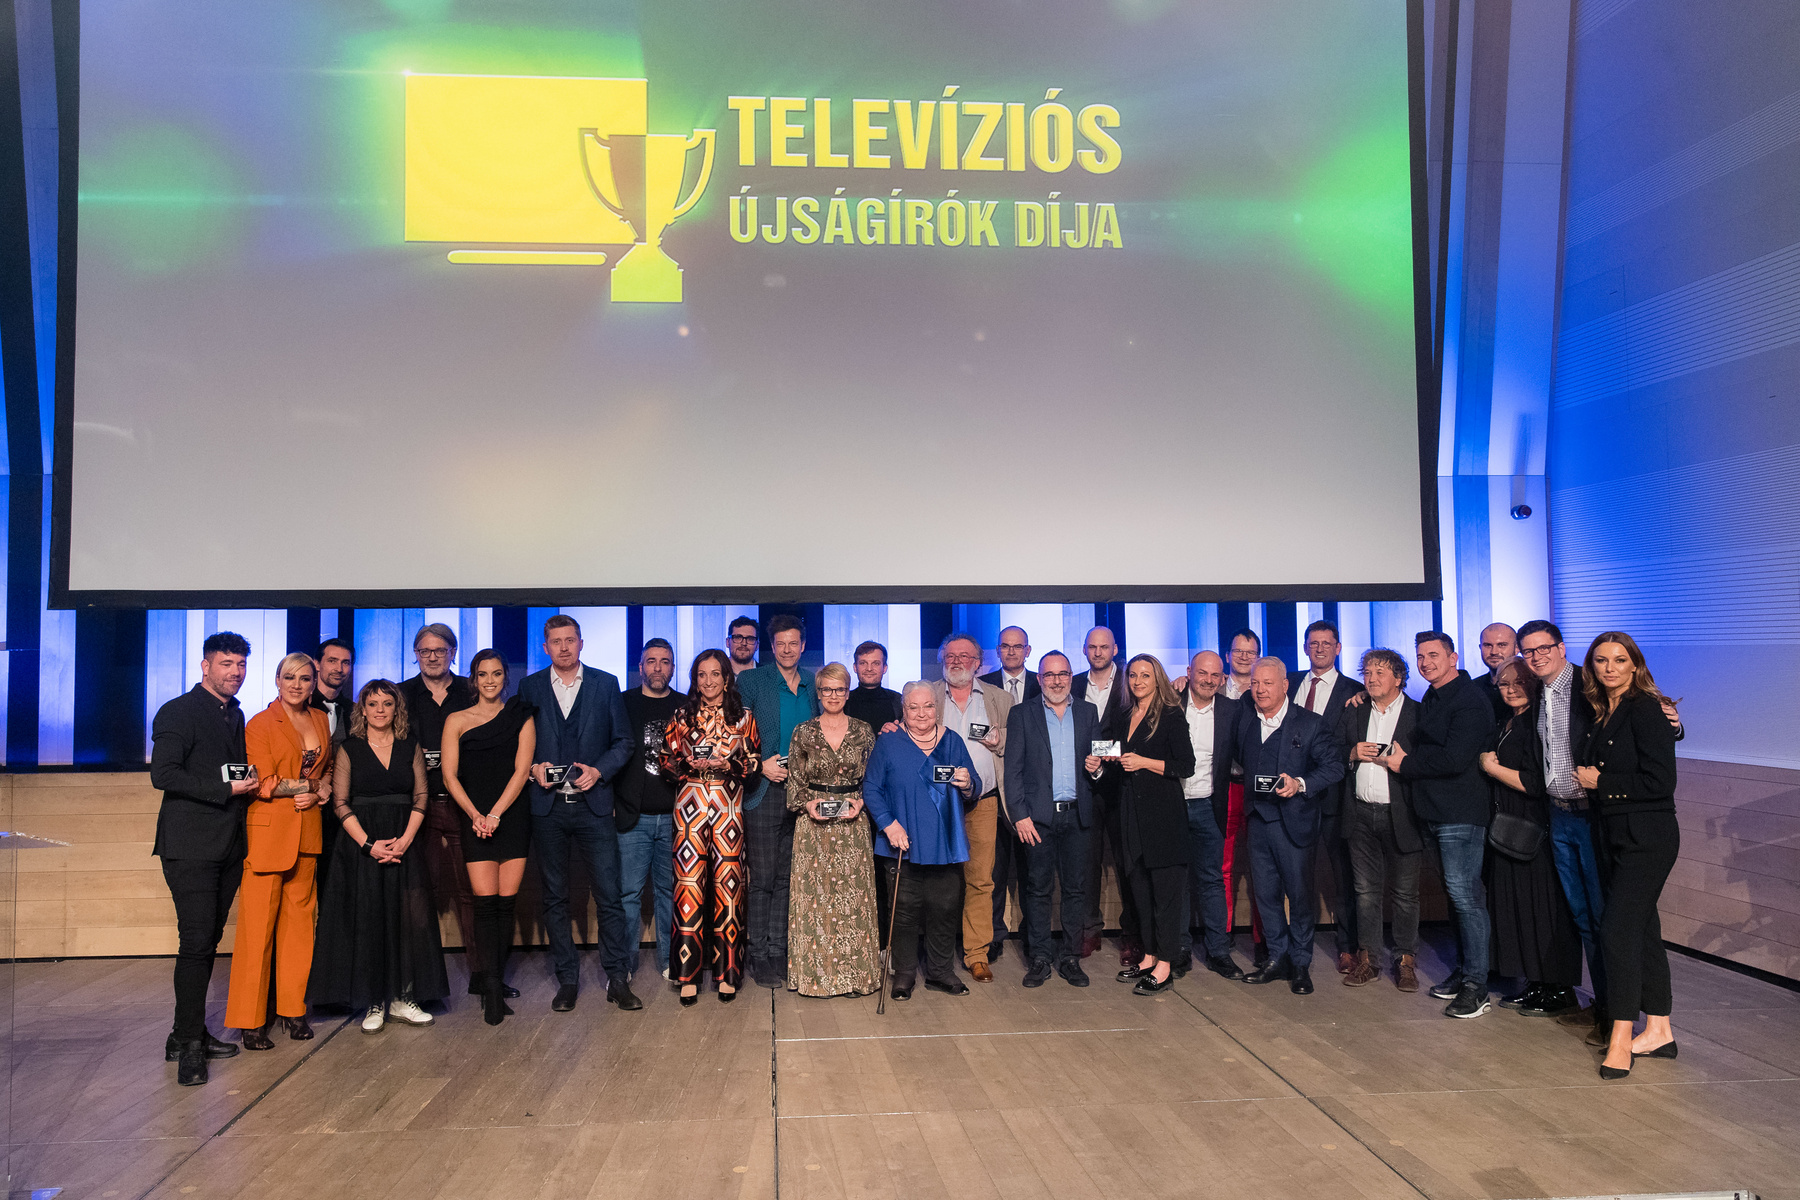 Televíziós Újságírók Díja - győztesek